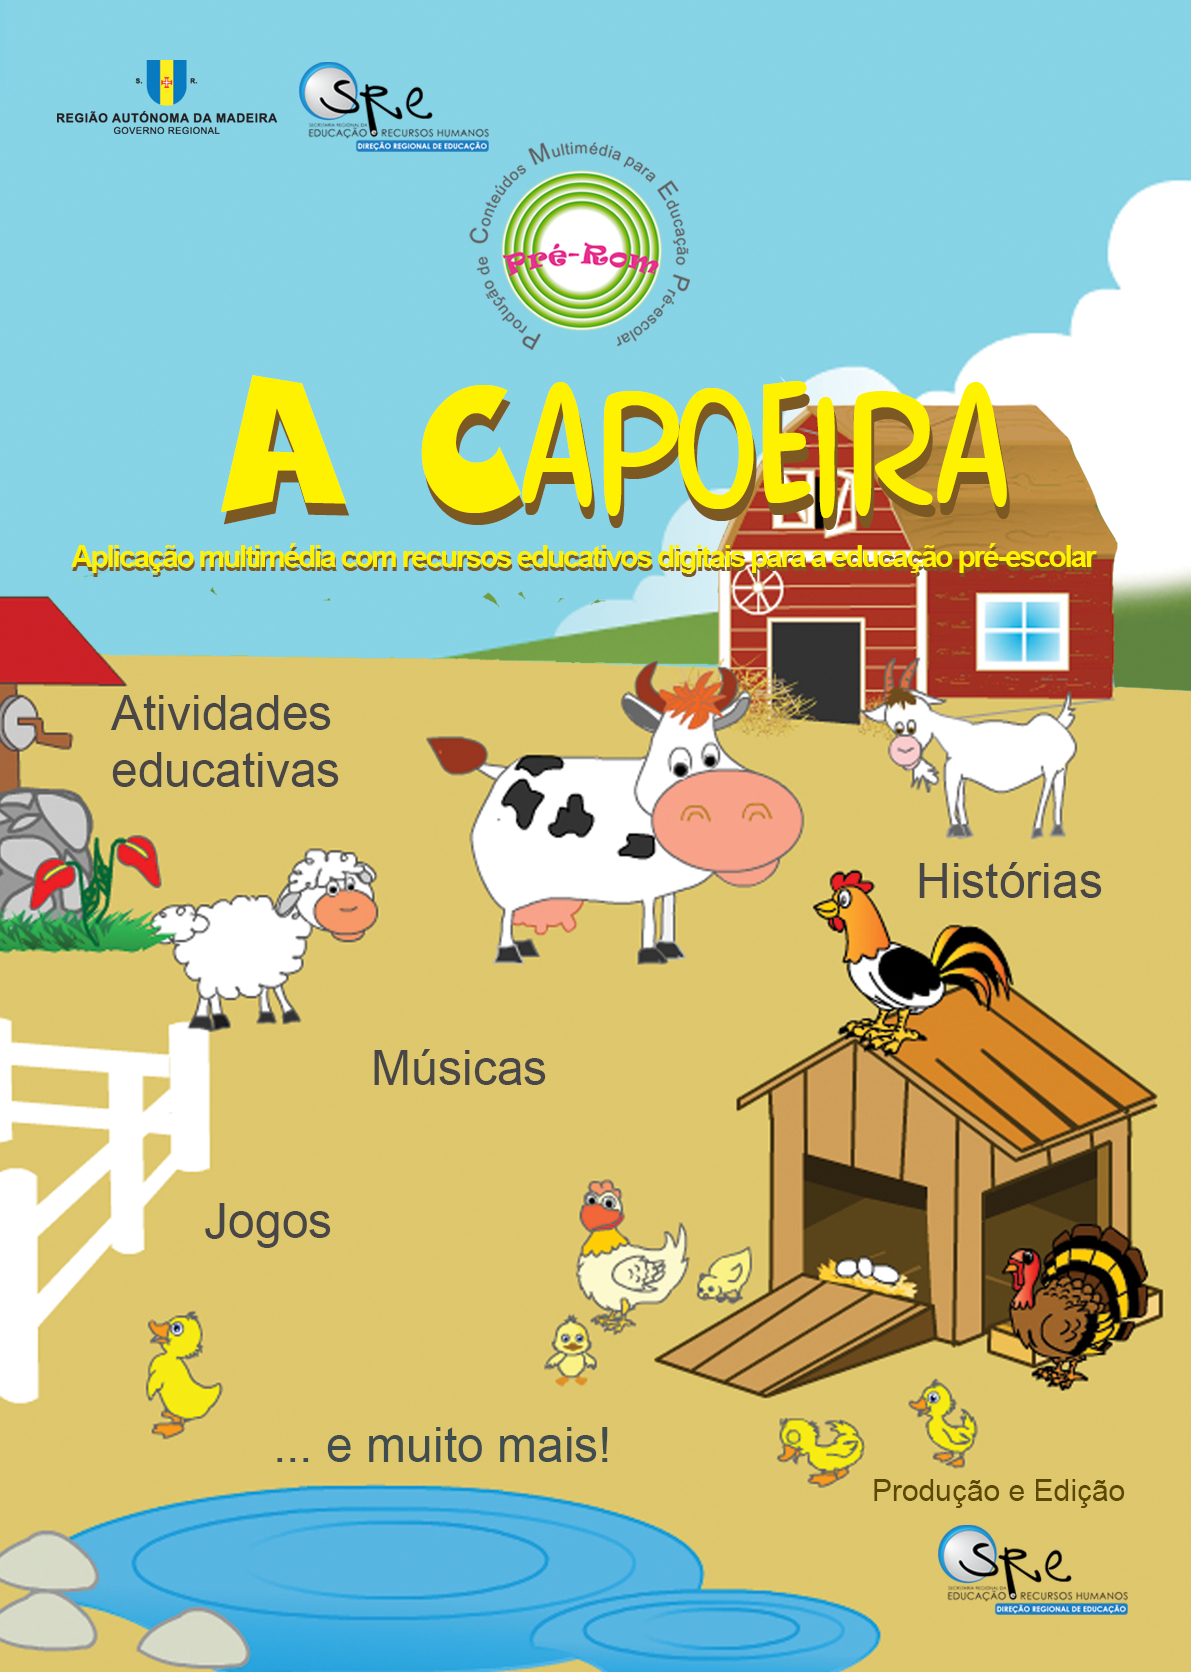 Lançamento da aplicação educativa digital 'A Capoeira'